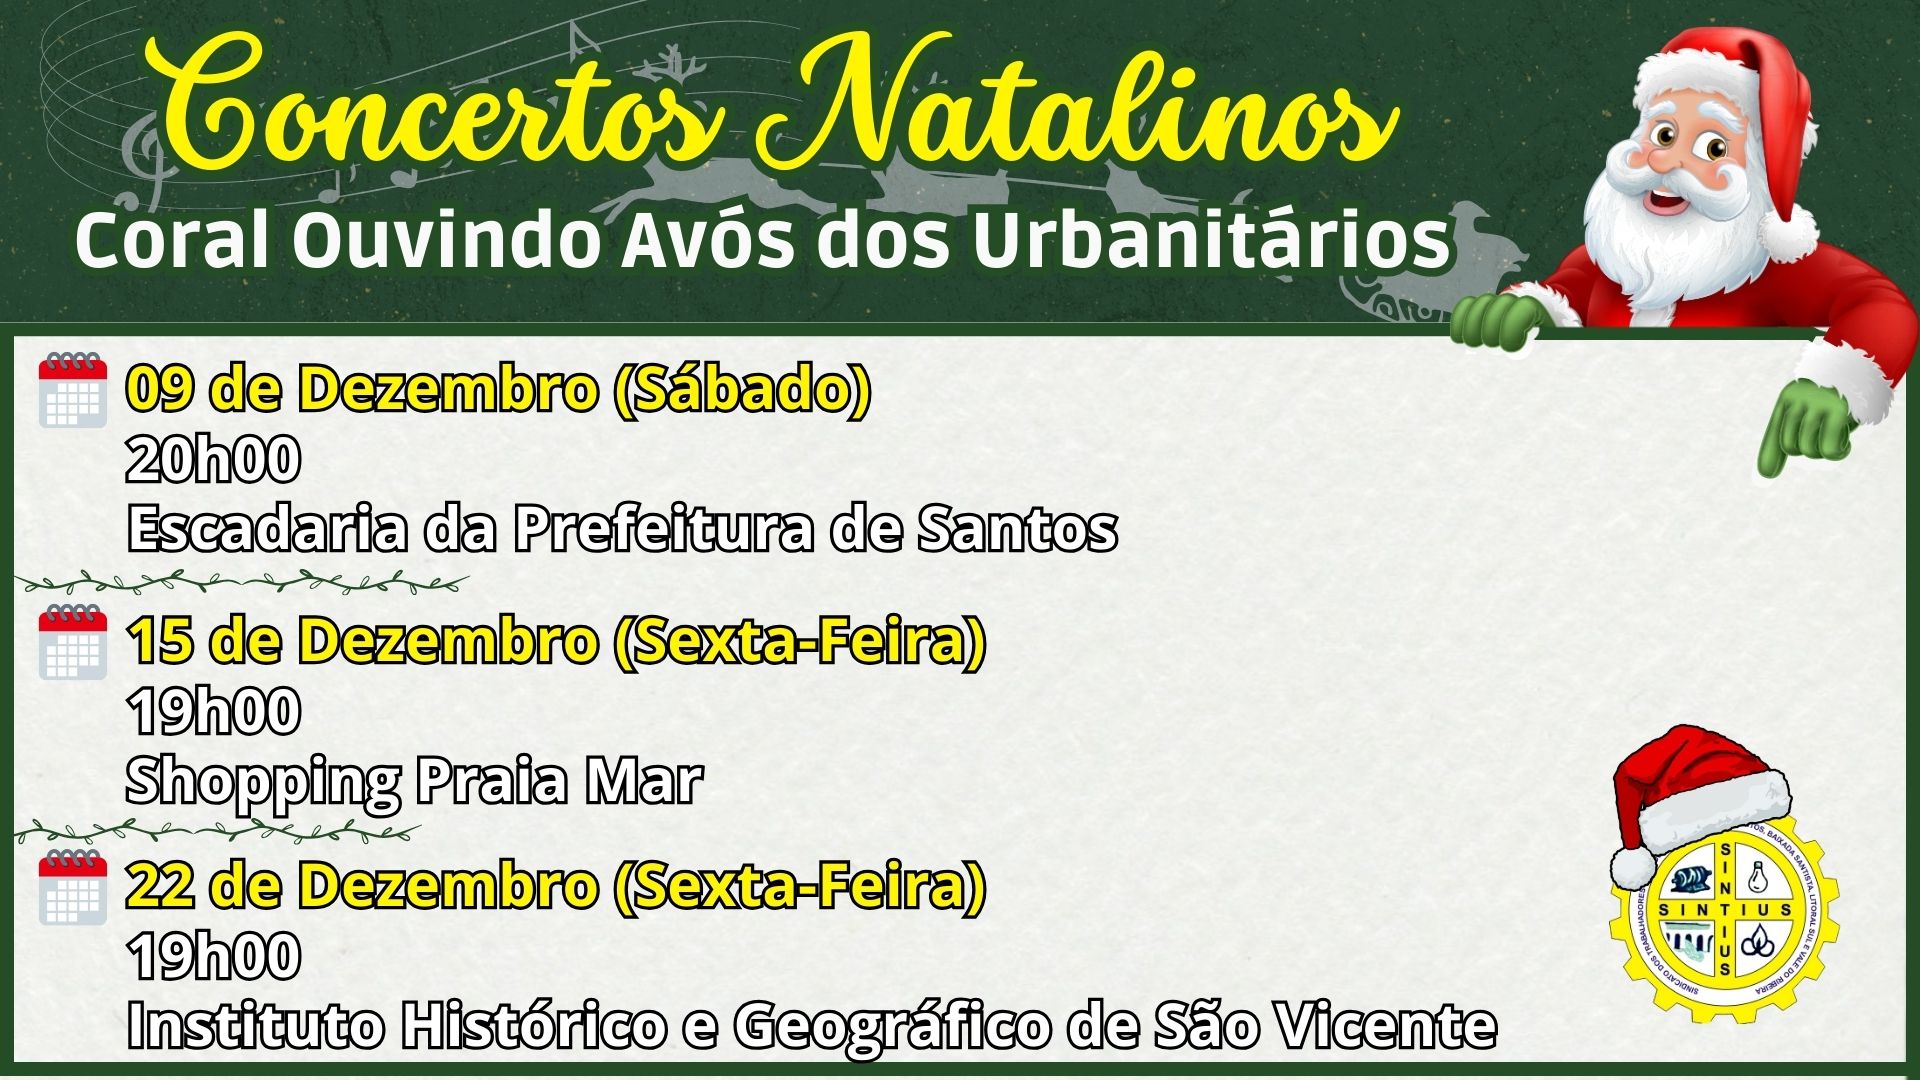 Sindicato dos Urbanitários - Santos - SP - Convênios